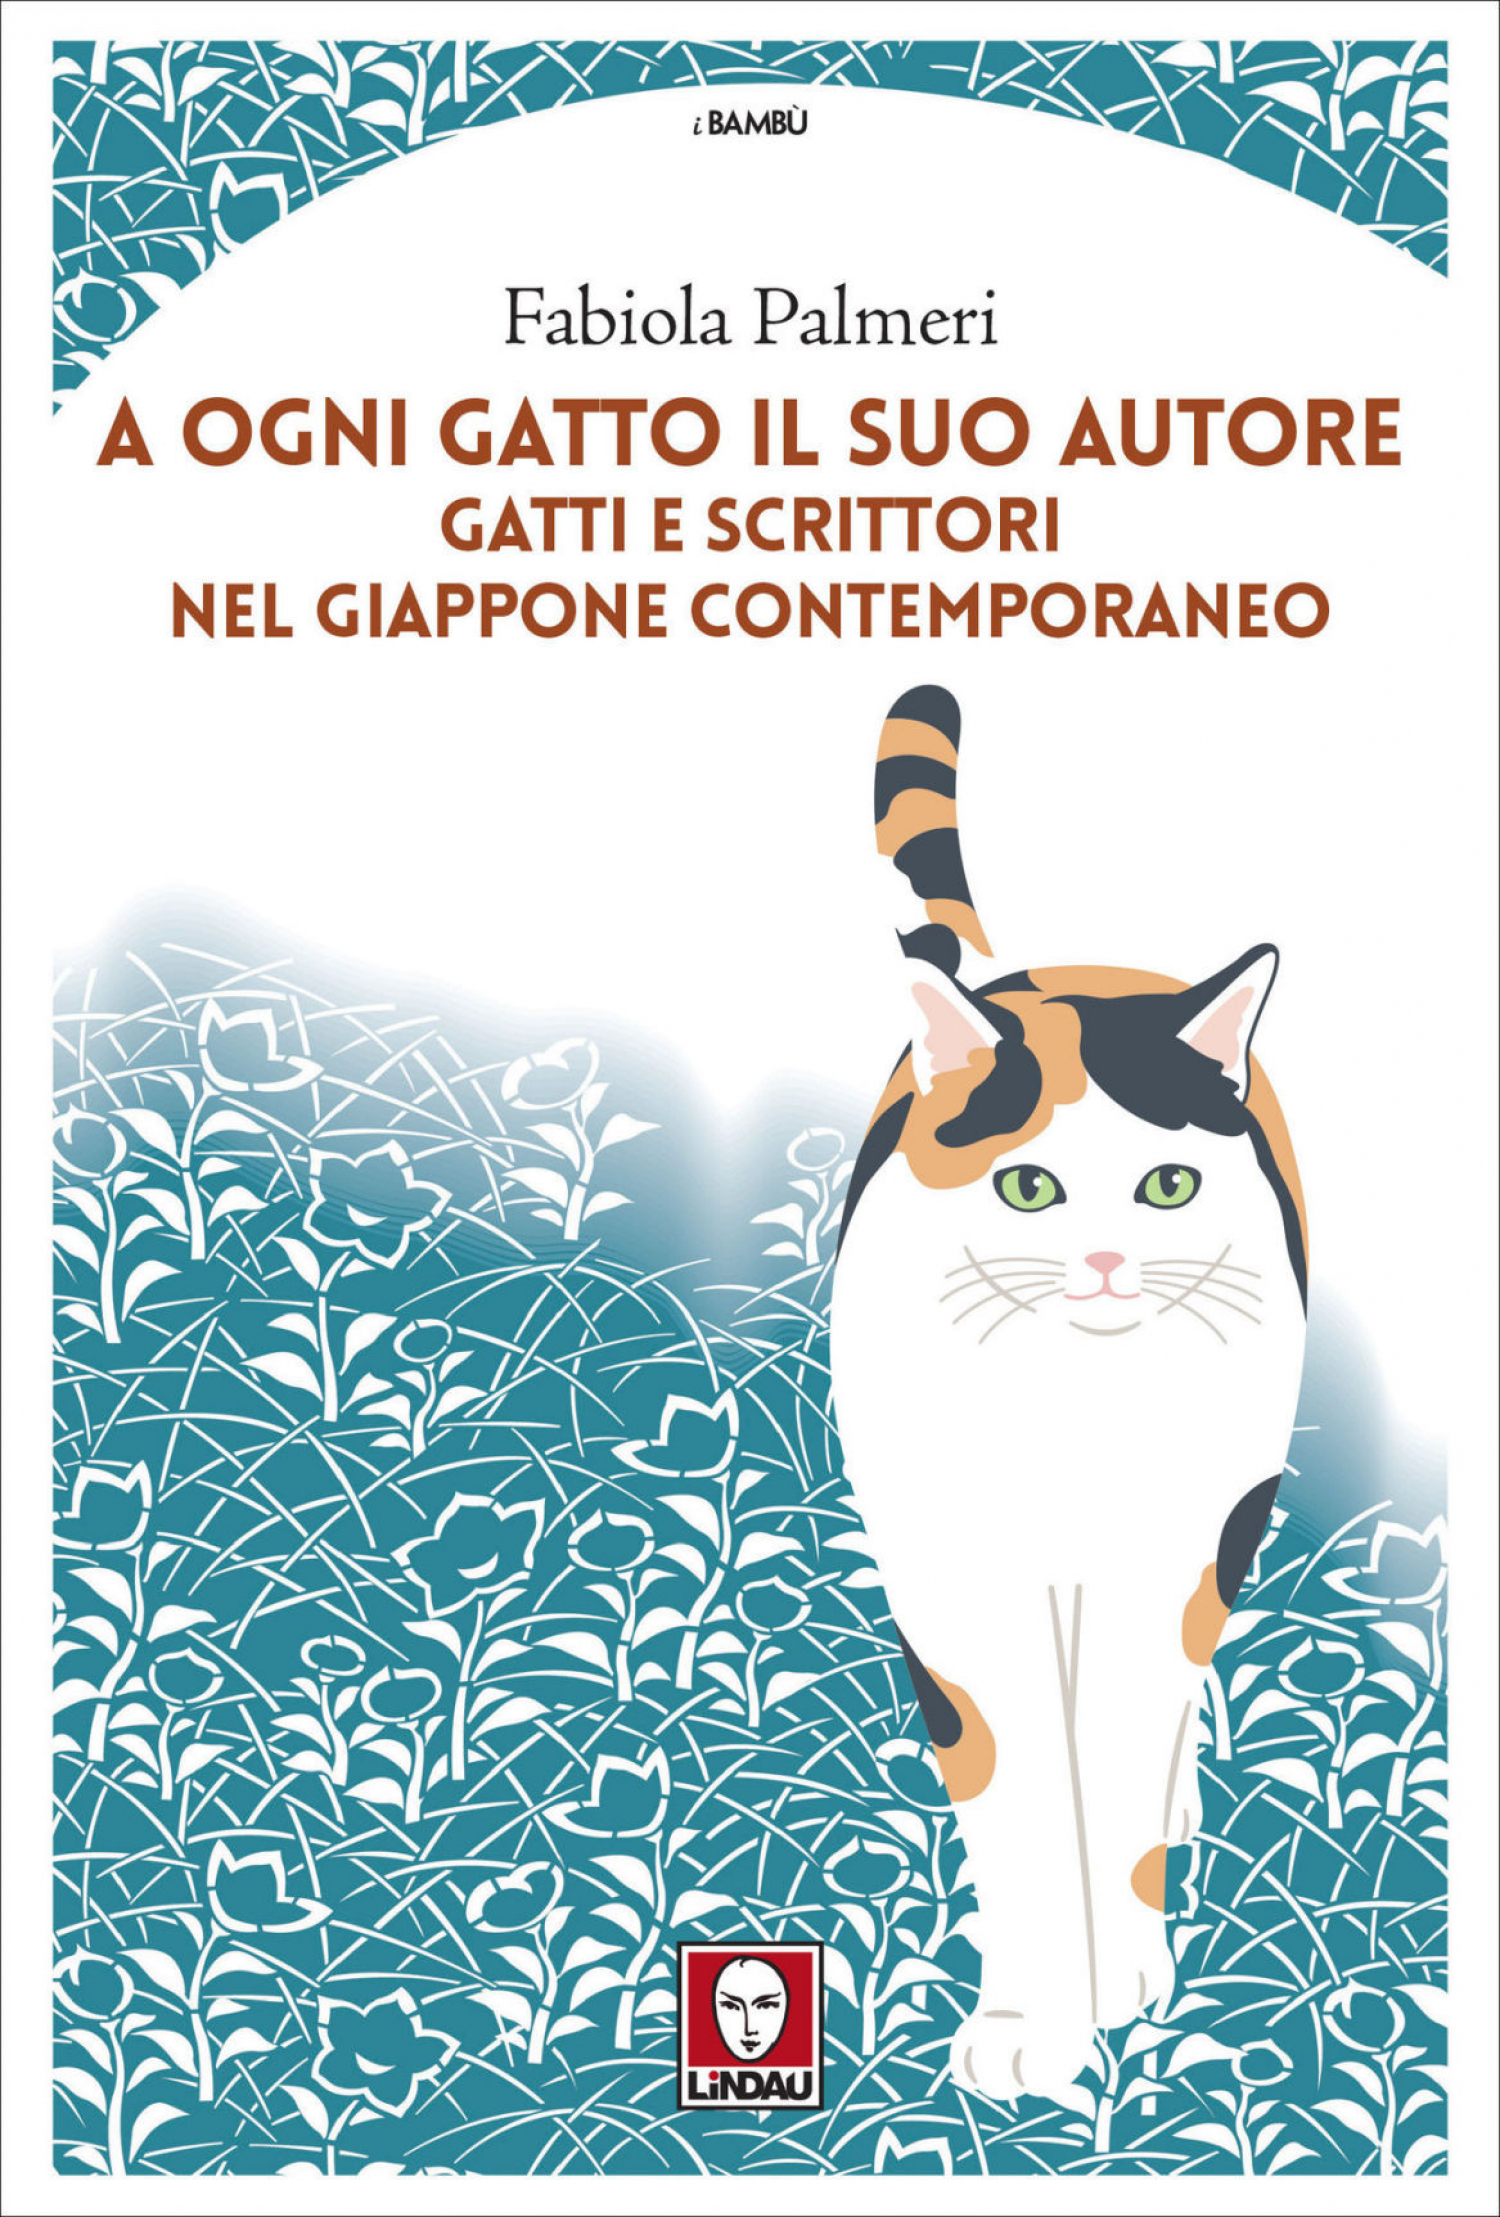 <p>Fabiola Palmeri presenta&nbsp;<strong><a target="_blank" href="https://www.lindau.it/Libri/A-ogni-gatto-il-suo-autore"><em>A ogni gatto il suo autore.&nbsp;Gatti e scrittori nel Giappone contemporaneo</em></a></strong>&nbsp;(Edizioni Lindau).</p><p>&nbsp;</p><p>Dieci milioni di gatti abitano nelle case giapponesi, a testimonianza di una relazione che si &egrave; evoluta nei secoli. I primi arrivarono via nave dalla Cina insieme ai testi dei sutra buddhisti e vennero amati dagli aristocratici della corte di Kyōtō, prima di divenire gli attuali gatti domestici presenti un po&rsquo; ovunque, dalle stazioni ai templi, agli anime.</p><p>Neko jita (lingua di gatto), Neko no hitai (la fronte del gatto per riferirsi a spazi piccoli), Nekonadegoe (la voce suadente e calma dei gatti e degli umani che con loro interagiscono) sono alcuni modi di dire che la lingua giapponese utilizza.</p><p>Esiste una vasta letteratura a tema neko che risale indietro nel tempo. Quella contemporanea &egrave; detta nekobungaku ed &egrave; costituita da racconti e romanzi in cui compaiono come personaggi di particolare rilievo gatti e gatte.</p><p>In questo libro i lettori troveranno spaccati di vita personale, aneddoti e naturalmente tante storie narrate e osservate da colorati e ammalianti &laquo;occhi di gatto&raquo;. Da Murakami Haruki a Kakuta Mitsuyo, da Morishita Noriko a Makoto Shinkai, per nominare solo alcune delle &laquo;penne&raquo; considerate, si svelano dettagli, opinioni e relazioni dei neko della narrativa nipponica dei nostri giorni, con gli umani che di loro scrivono e raccontano.</p><p>&nbsp;</p><p><strong>Fabiola Palmeri</strong>, giornalista professionista, conduttrice radiofonica, scrive di attualit&agrave; e cultura giapponese sul &laquo;Fatto Quotidiano&raquo; e su &laquo;D - La Repubblica delle donne&raquo;. Dopo la laurea in Filosofia, ha iniziato la sua carriera come giornalista lavorando prima per &laquo;La Stampa&raquo; e poi alla NHK, il servizio pubblico radiotelevisivo giapponese con sede a Tōkyō, citt&agrave; nella quale ha vissuto per dodici anni. Ha scritto Fiabe del Sole pi&ugrave; a Est, Come un sushi fuor d&rsquo;acqua e Miti e leggende giapponesi.</p><p>&nbsp;</p><p>&nbsp;</p>